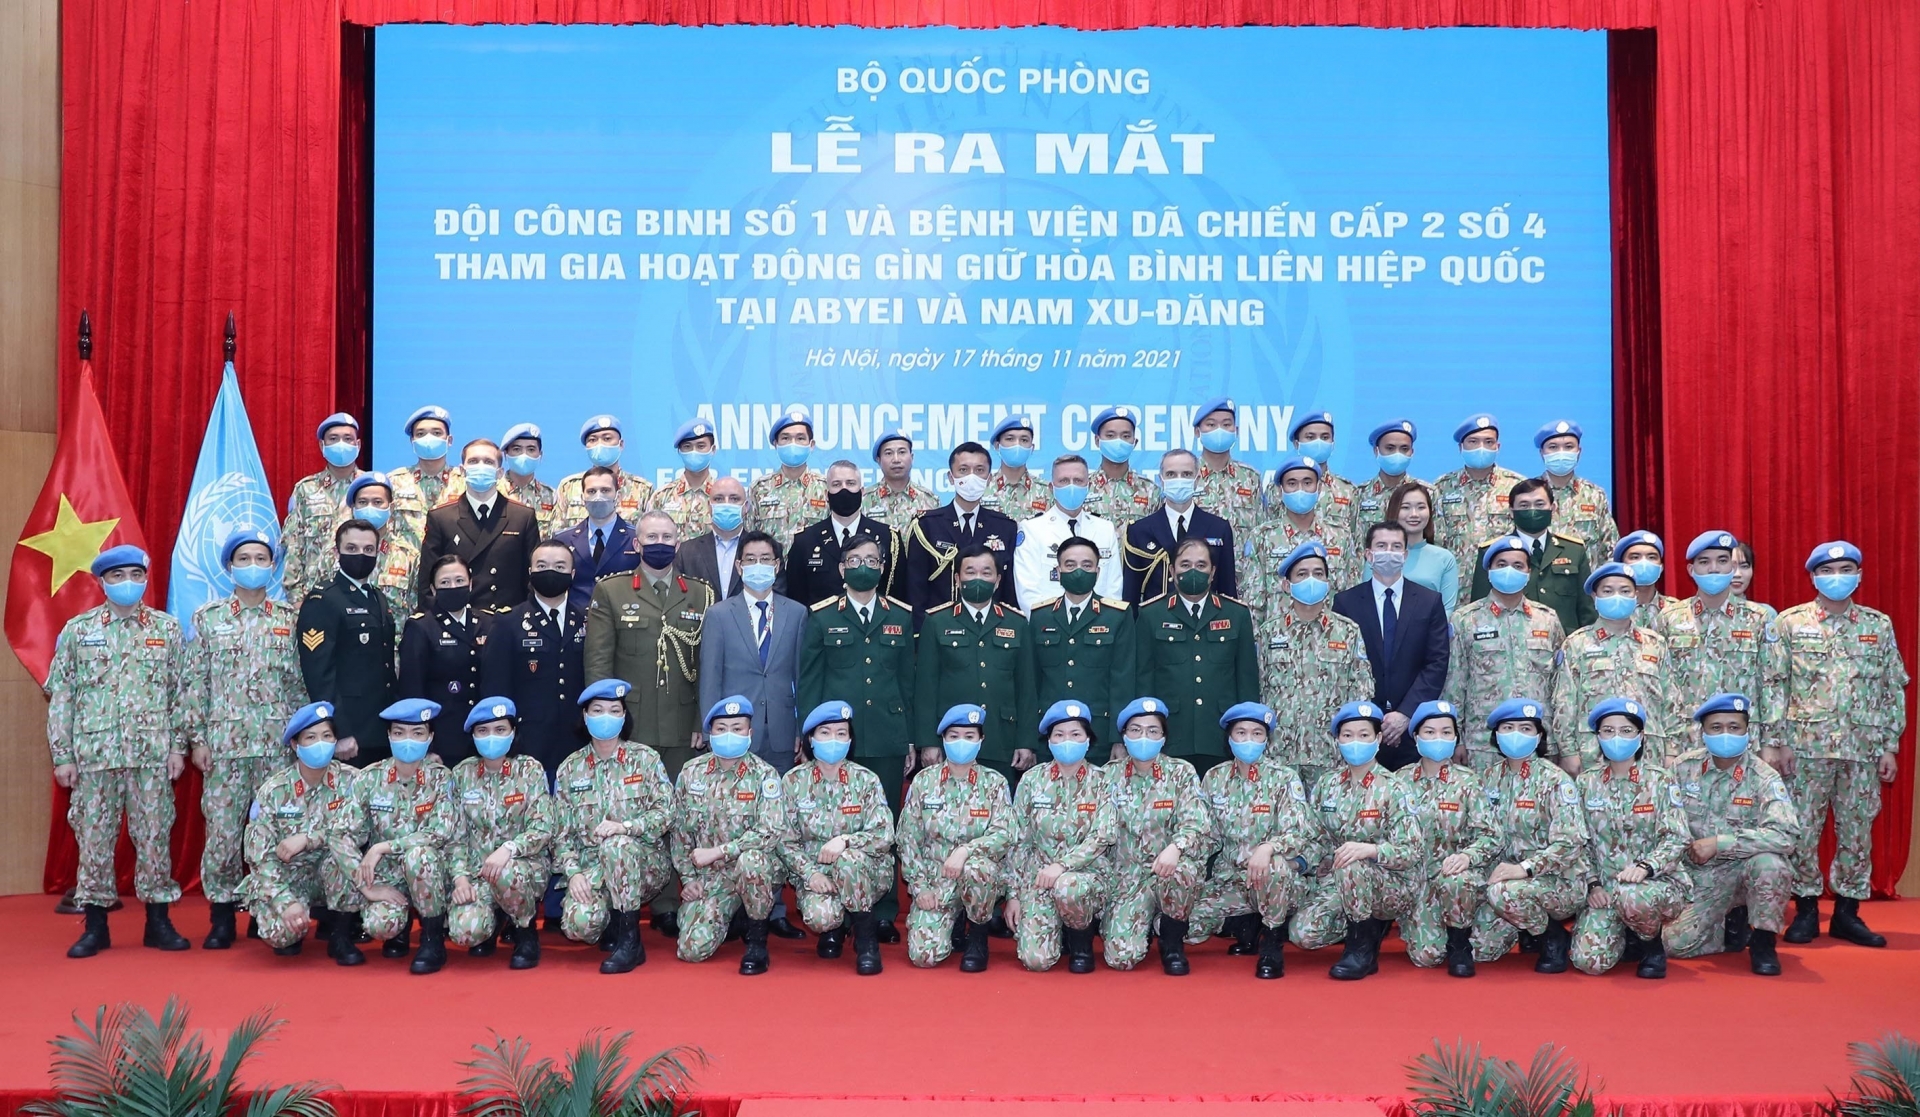 Thượng tướng Hoàng Xuân Chiến, Thứ trưởng Bộ Quốc phòng cùng tùy viên quân sự các nước tại Việt Nam với Đội công binh số 1 và Bệnh viện dã chiến cấp 2 số 4